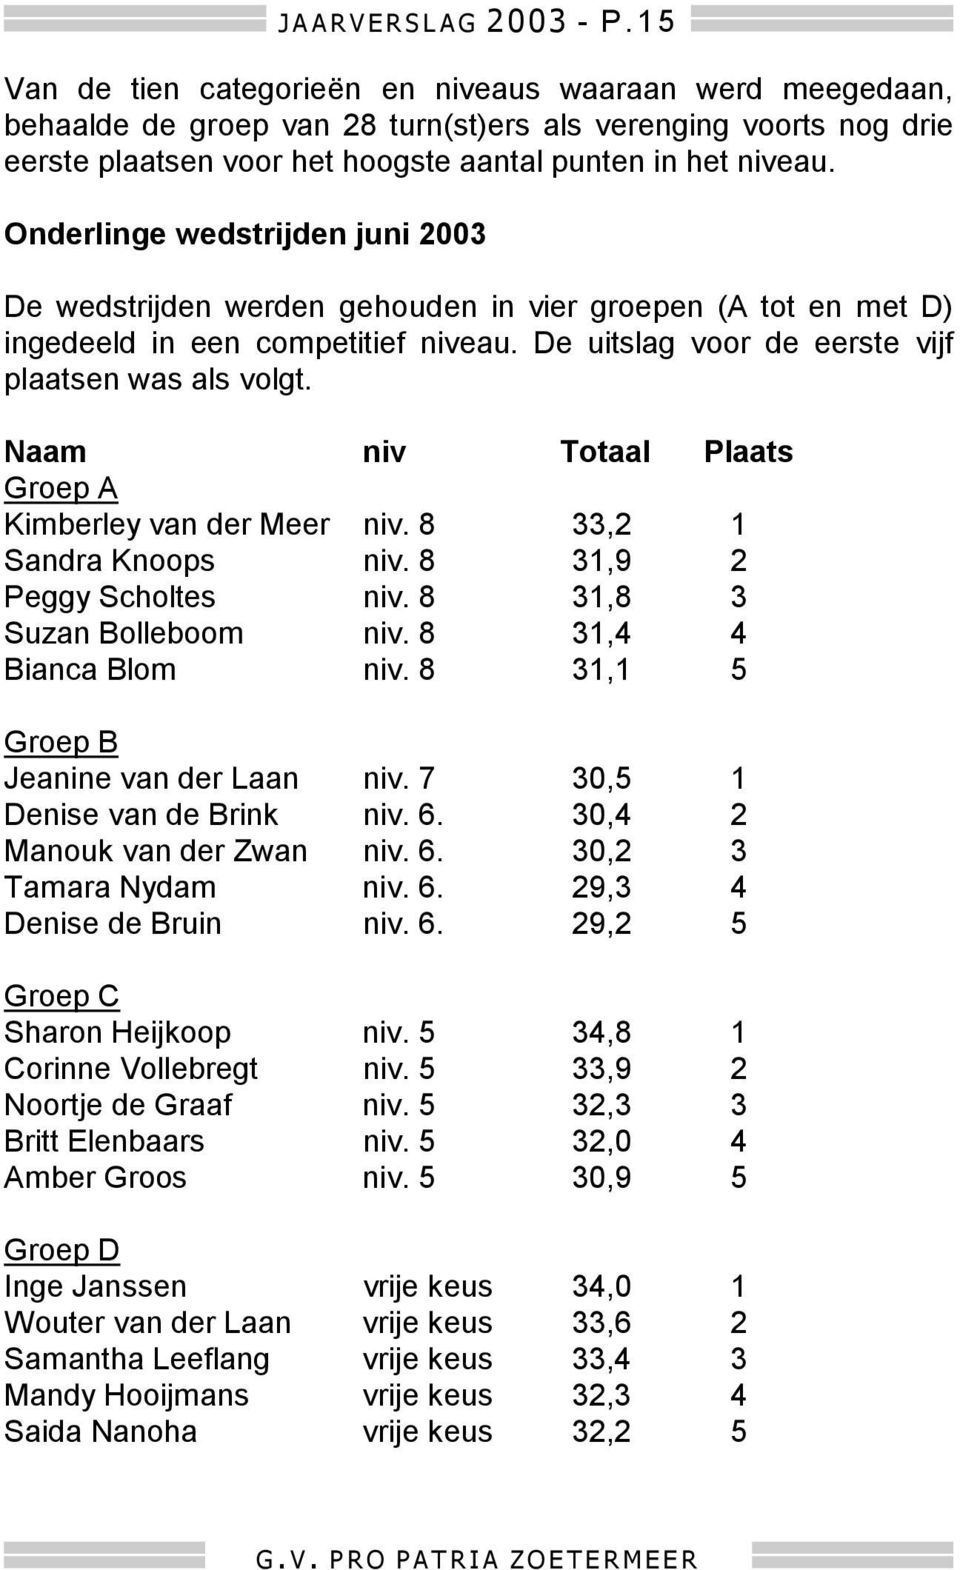 Onderlinge wedstrijden juni 2003 De wedstrijden werden gehouden in vier groepen (A tot en met D) ingedeeld in een competitief niveau. De uitslag voor de eerste vijf plaatsen was als volgt.